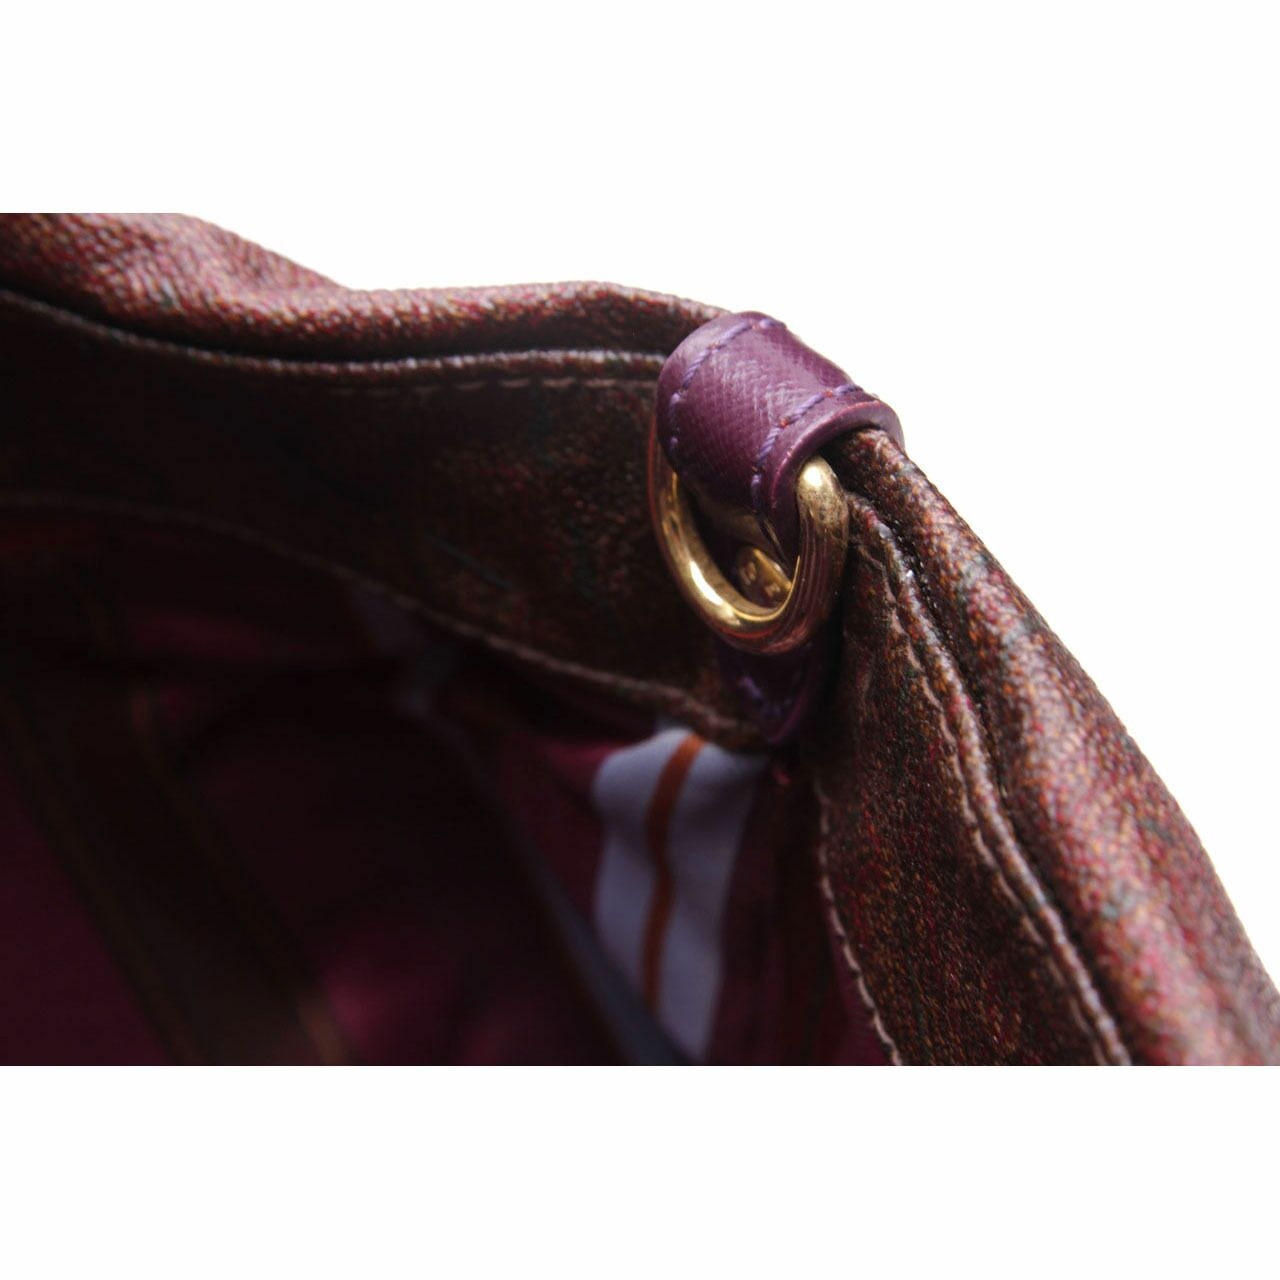 Etro Milano Brown Purple Shoulder Bag